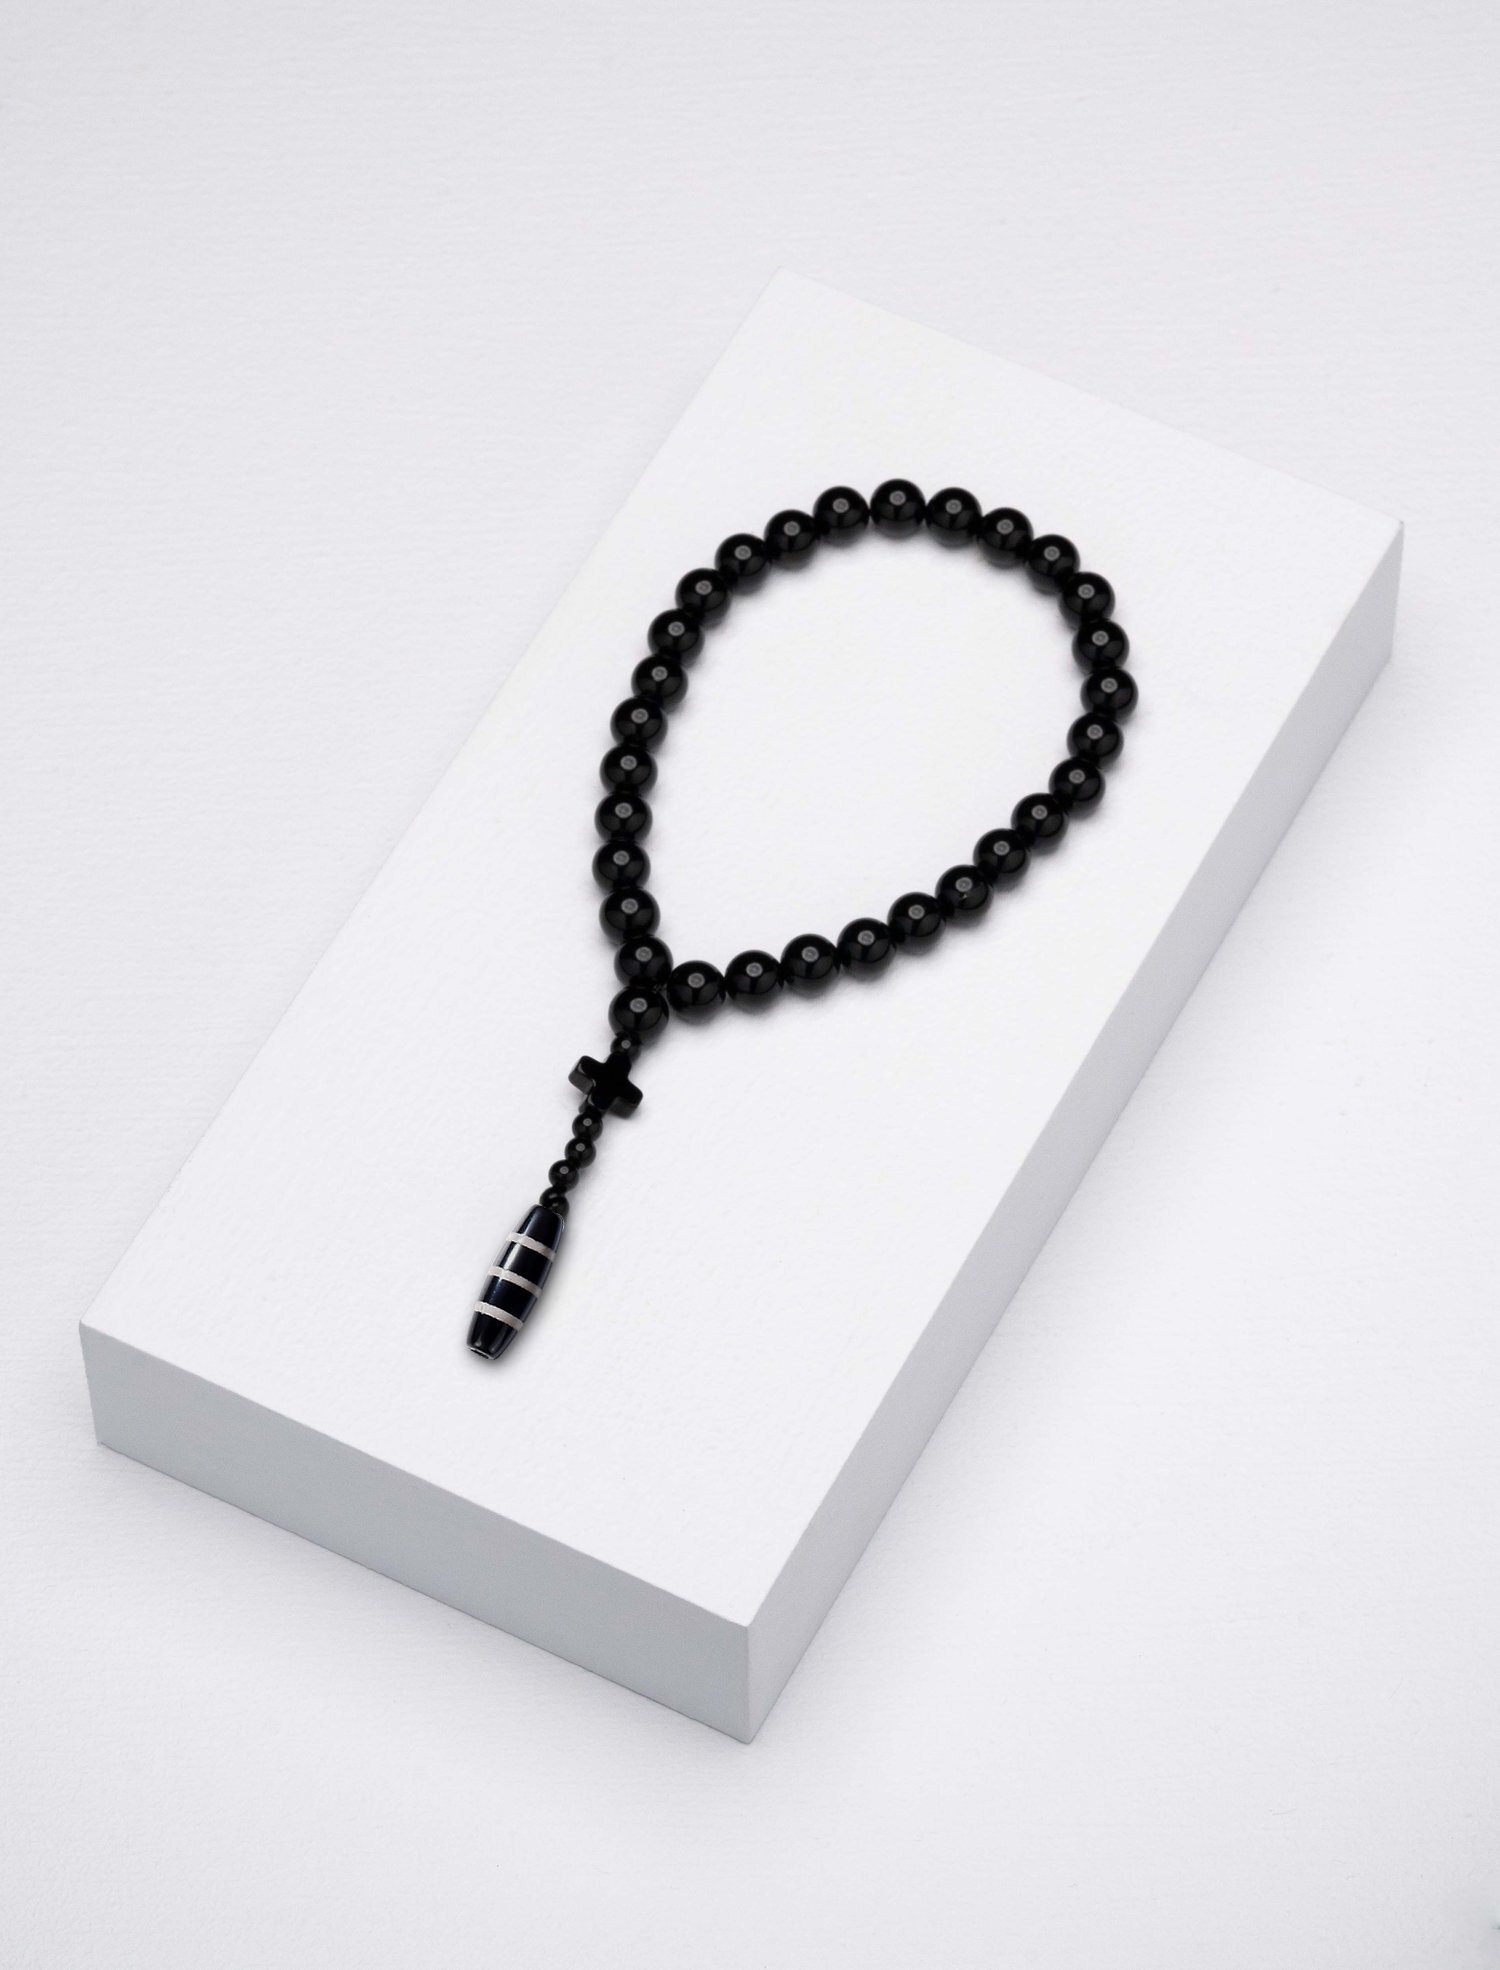 Beads — Caim Beads Caim Zonfrillo by Worry designed - Worry Jock